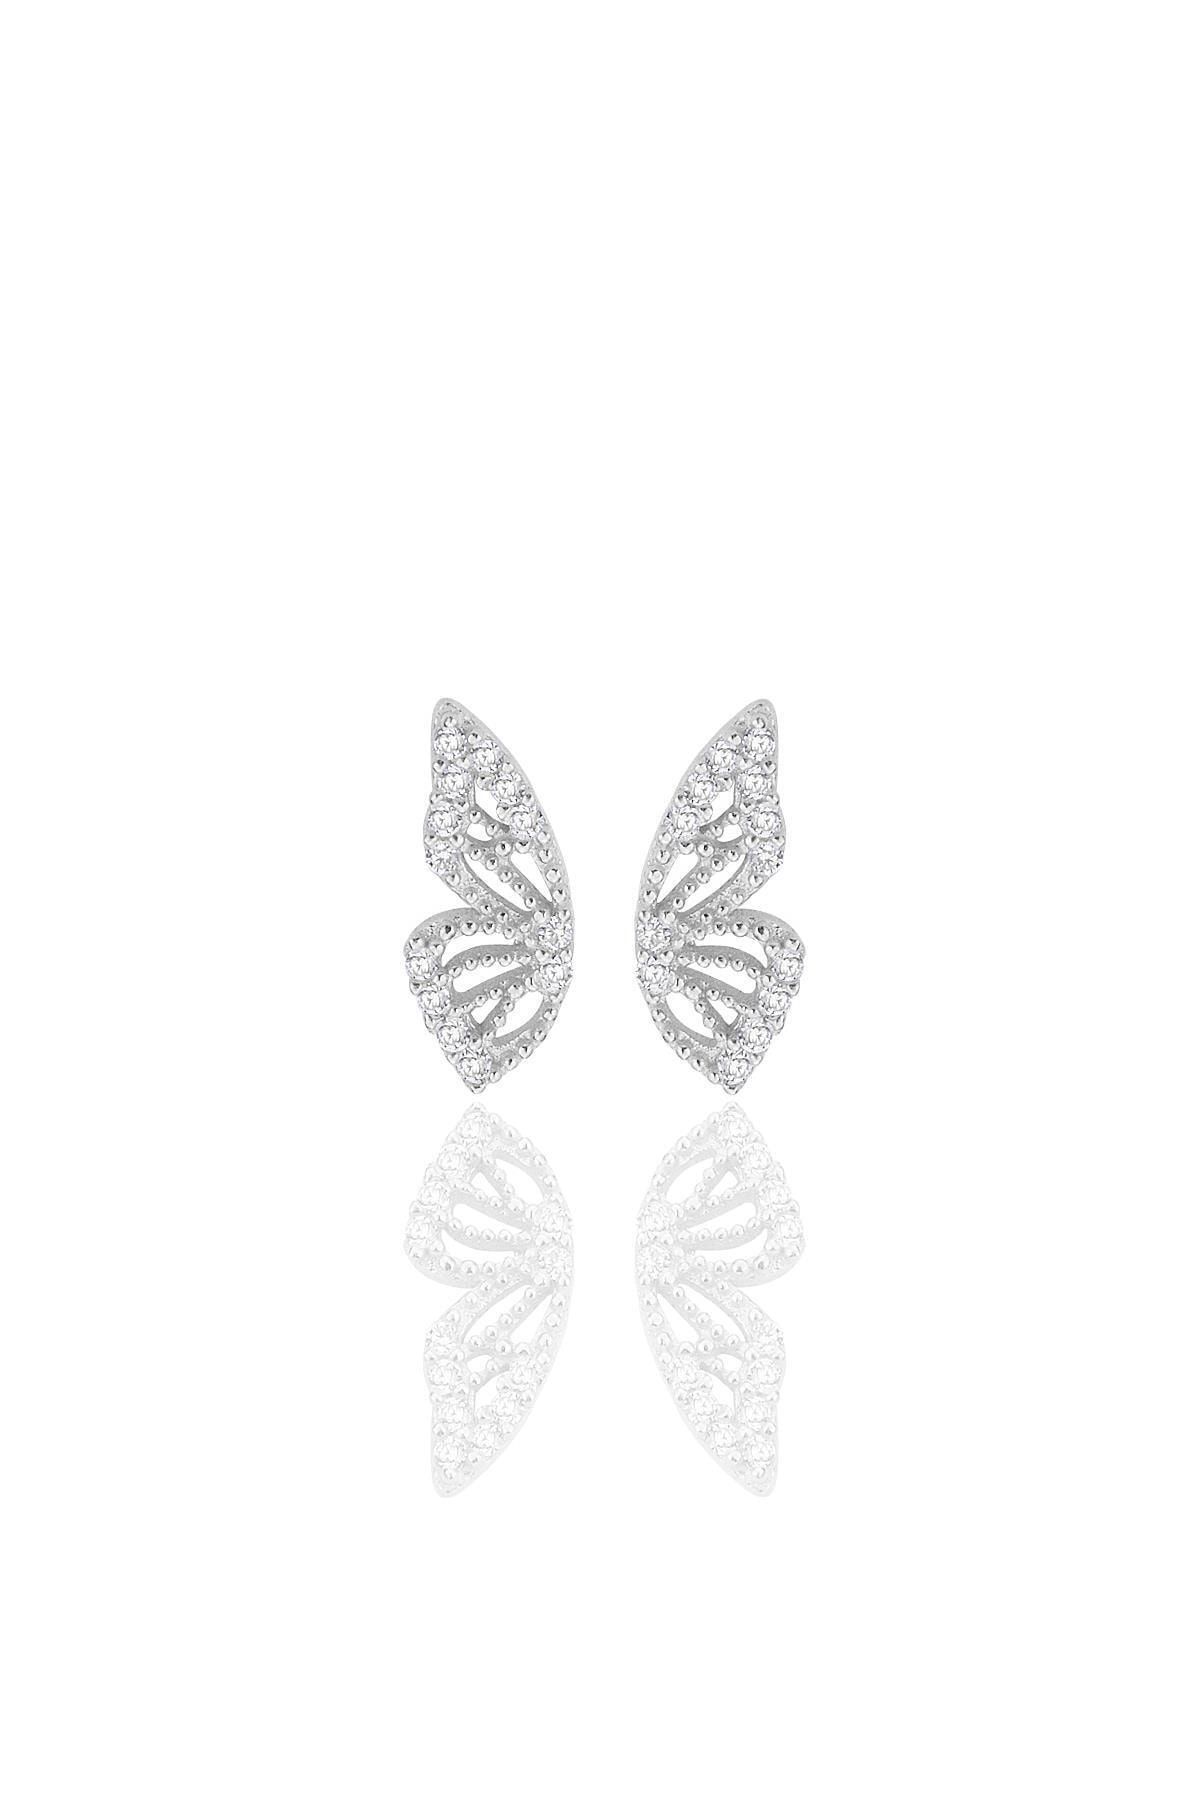 Söğütlü Silver Gümüş rodyumlu zirkon taşlı özel tasarım kelebek küpe SGTL12261RODAJ